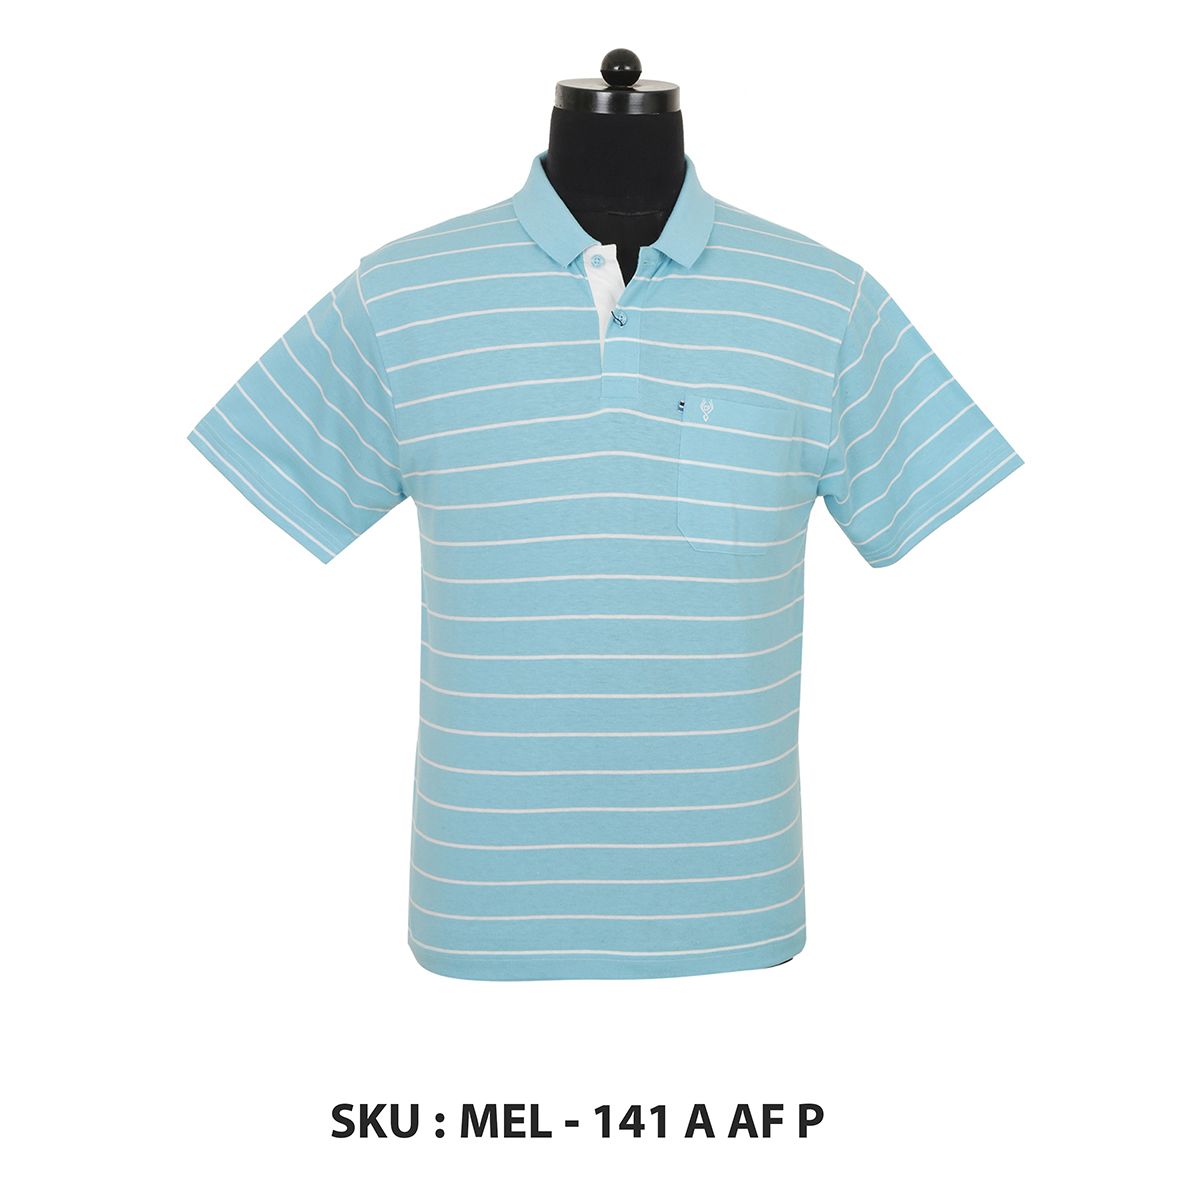 Classic Polo Mens T Shirt Mel - 141 A Af P Blue L